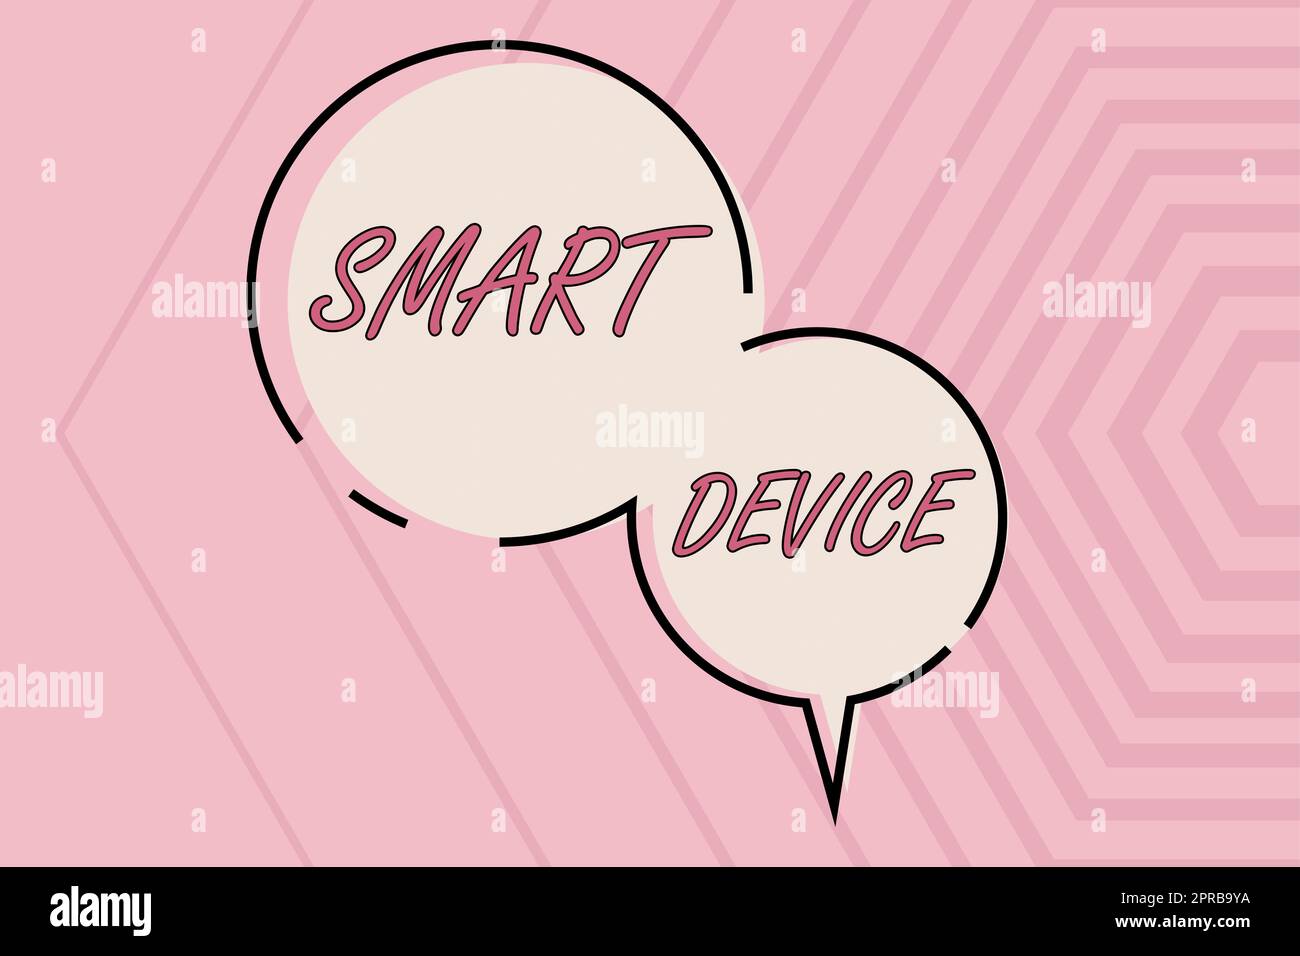 Konzeptionelles Display Smart Device. Word for Electronic Gadget, das Share mit Circular Speech Bubbles über gestreifte Showing-Strategien für Wachstum verbinden kann. Stockfoto